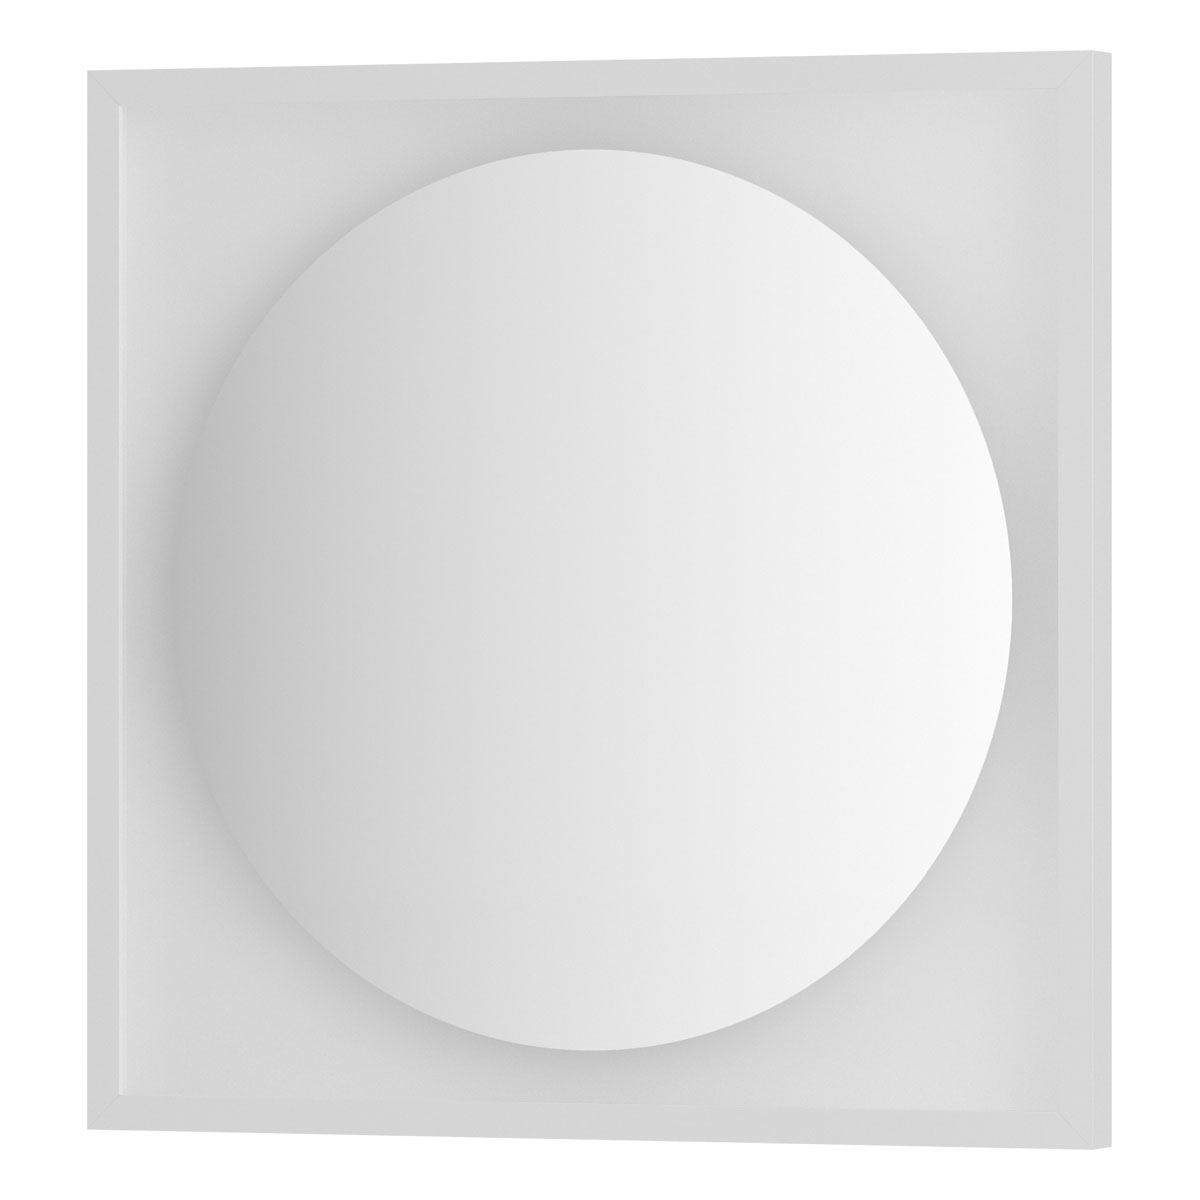 Зеркало Defesto с LED-подсветкой без выключателя 12 W нейтральный белый свет, белая рама 60x60 см